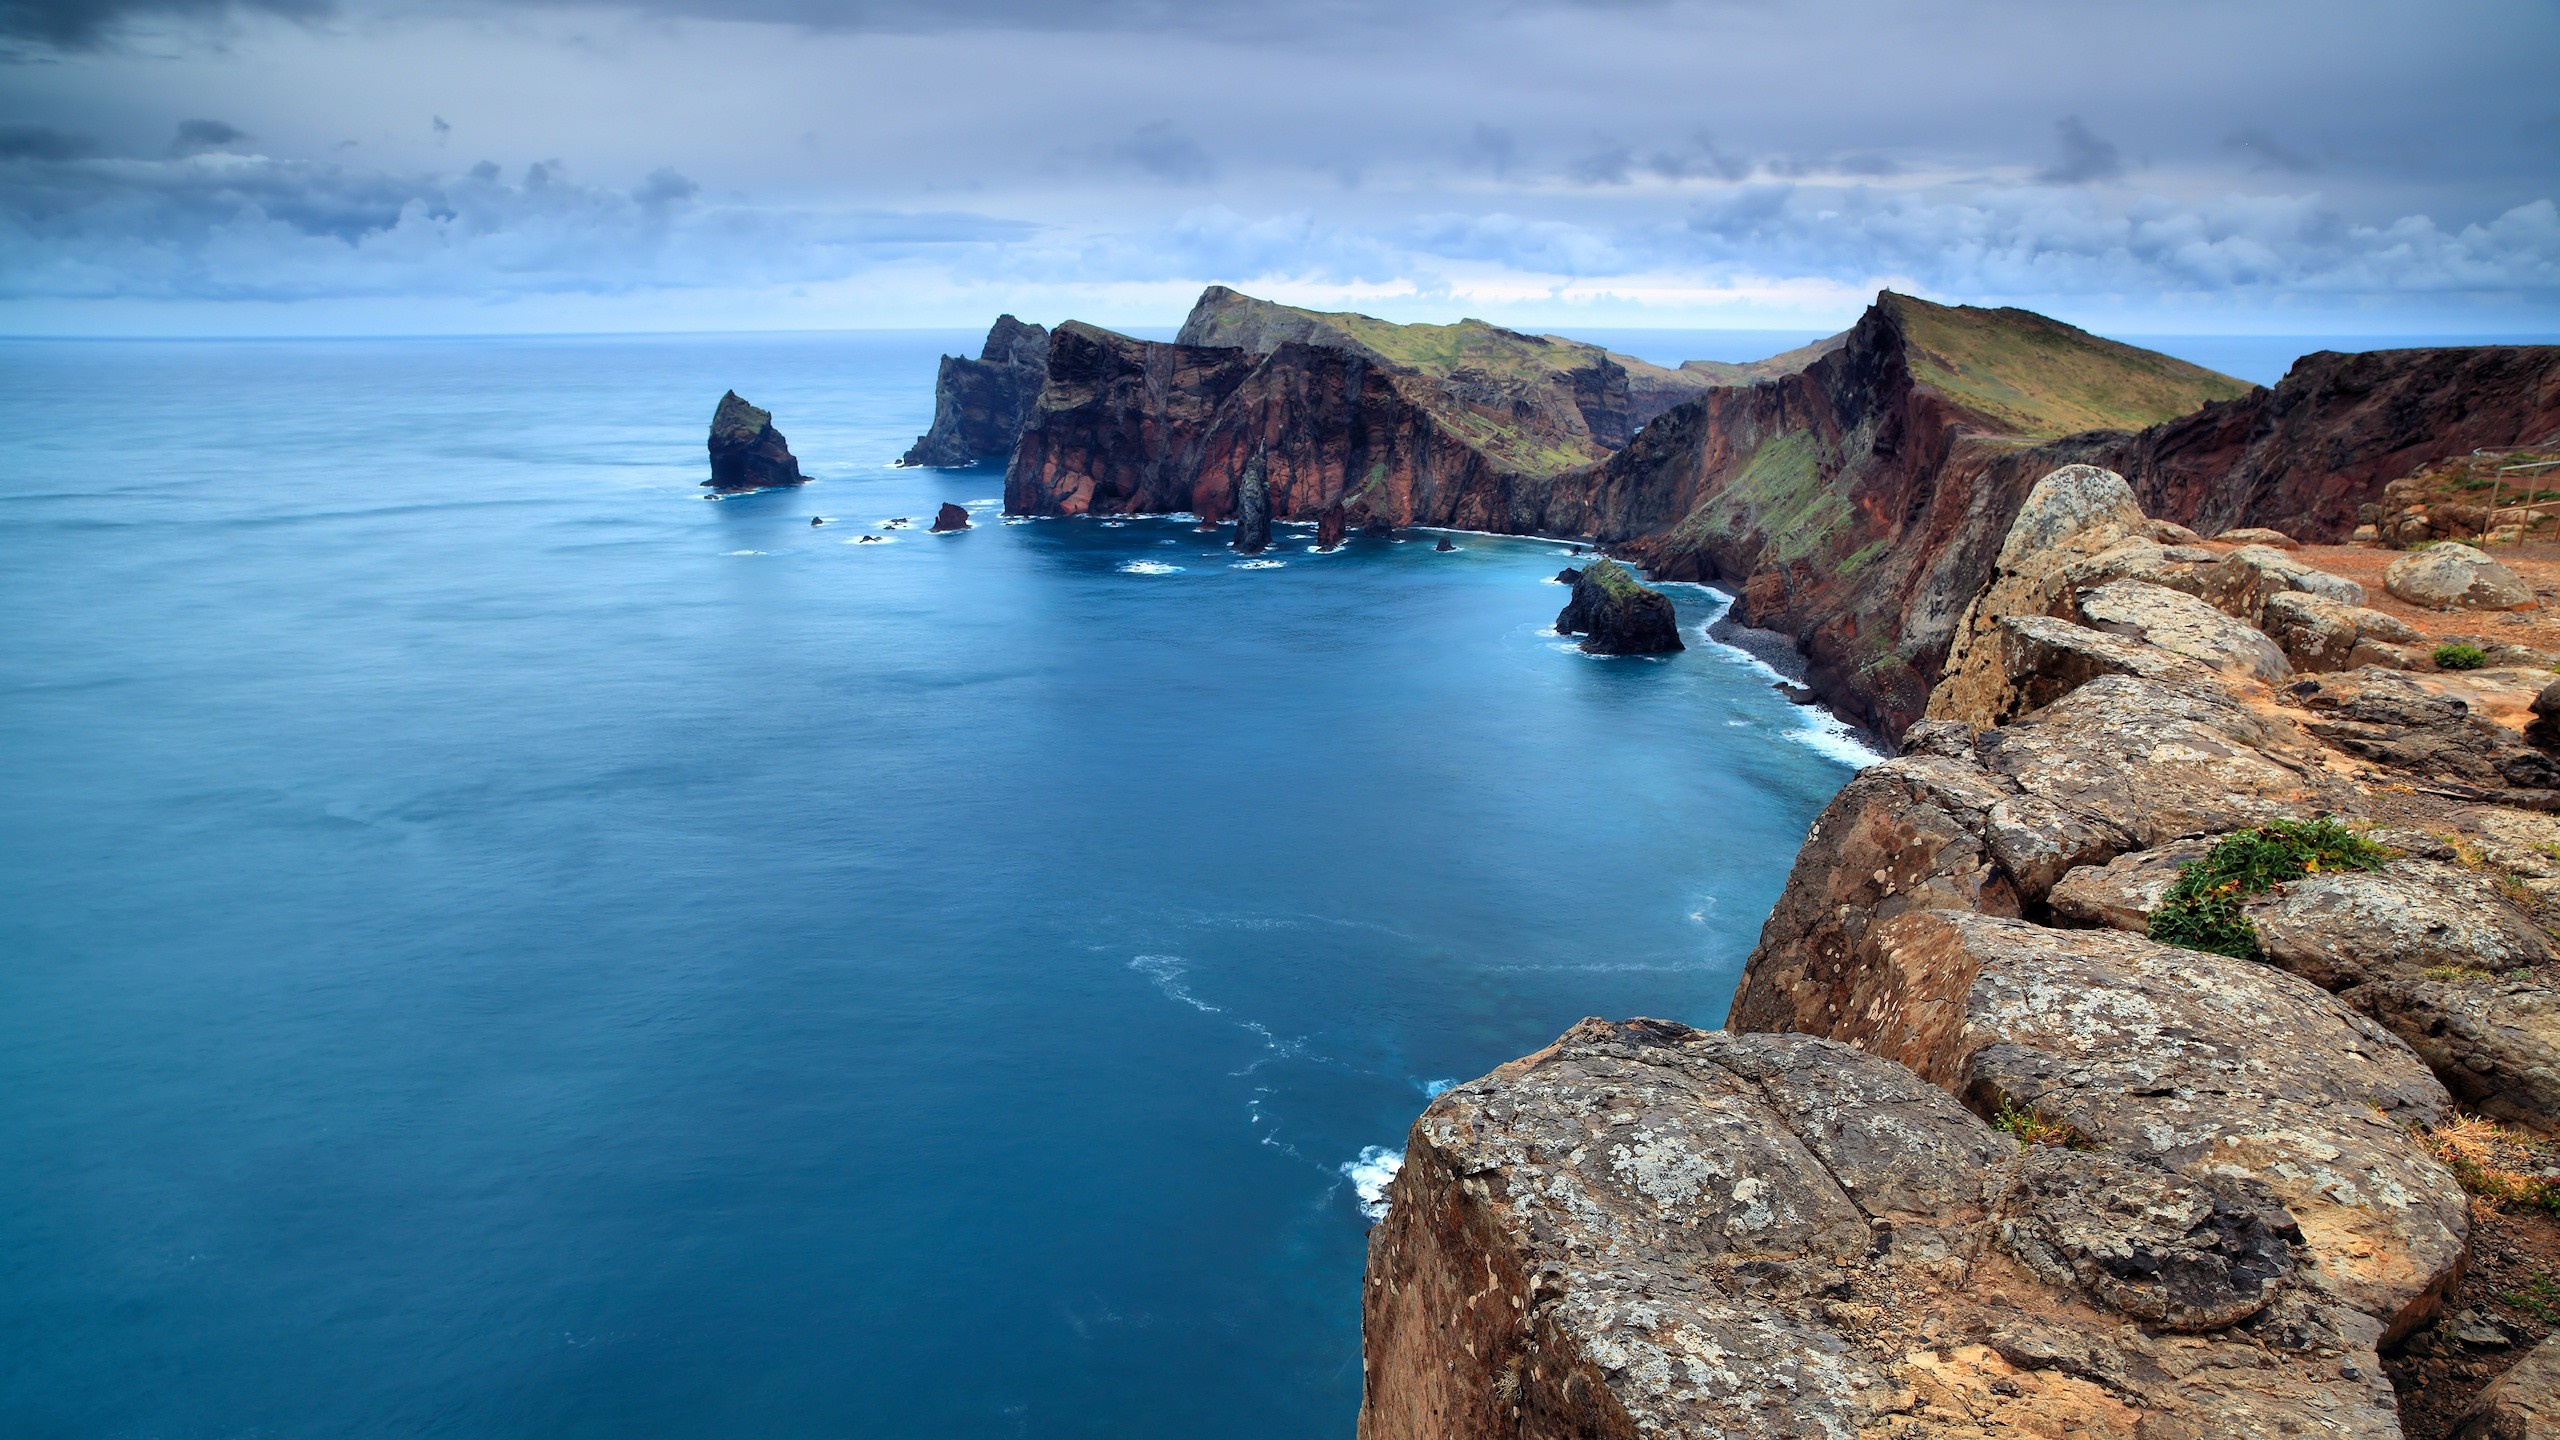 Madeira travels, Desktop wallpapers, Stunning island views, Wallpaper paradise, 2560x1440 HD Desktop